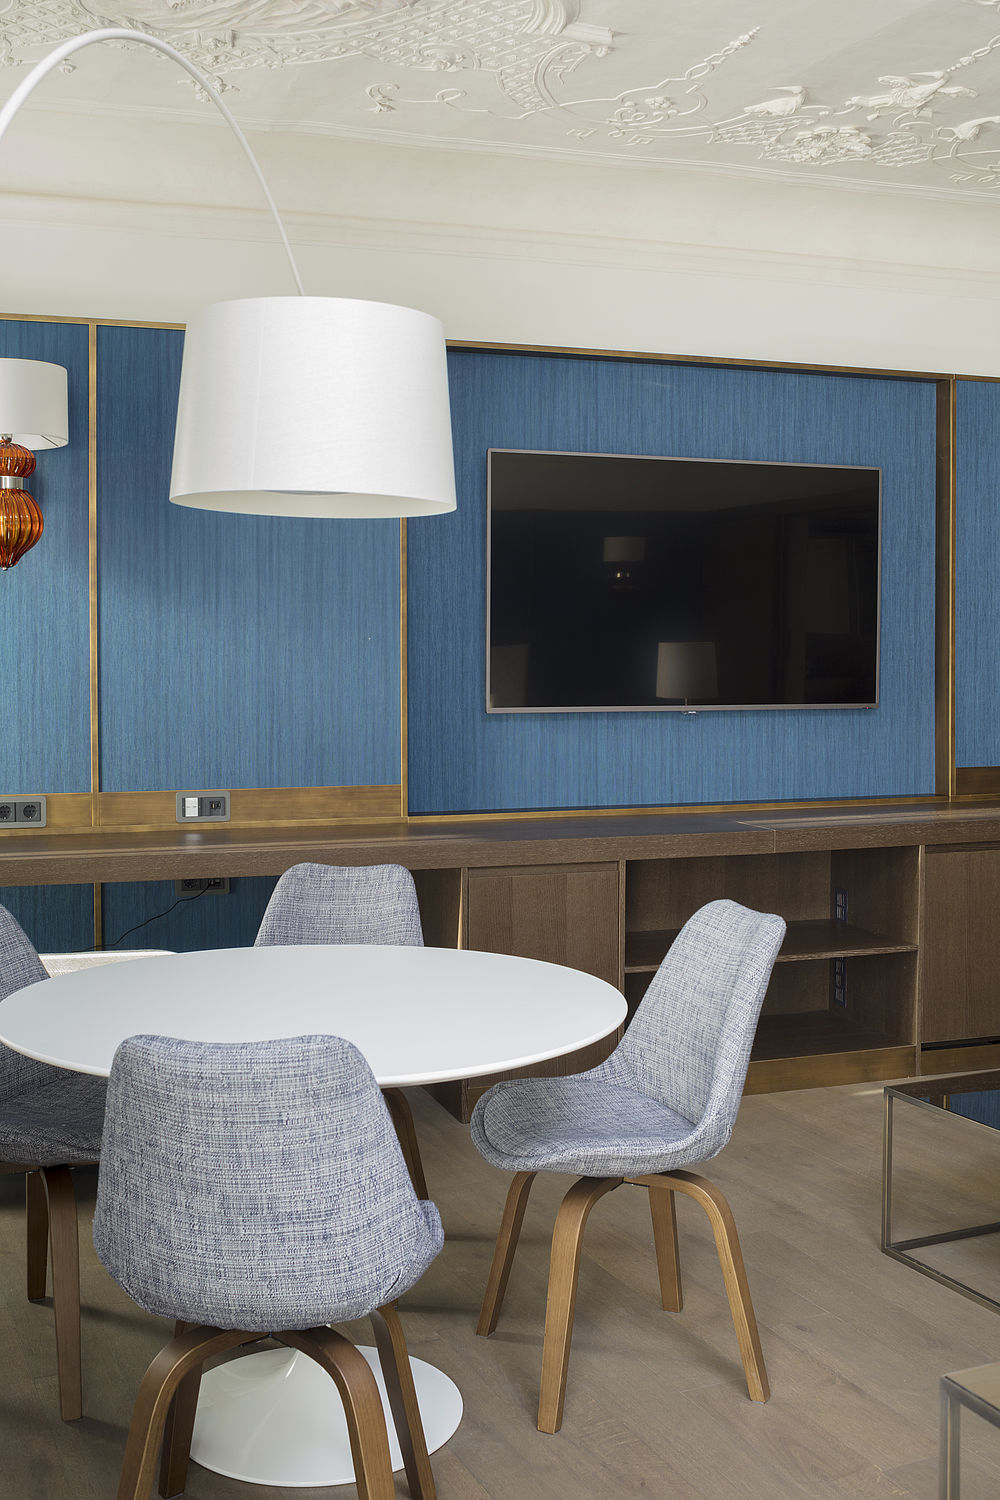 Area salotto nella suite luna di miele del design hotel Stein con sedie imbottite azzurre, tavolo bianco e schermo piatto